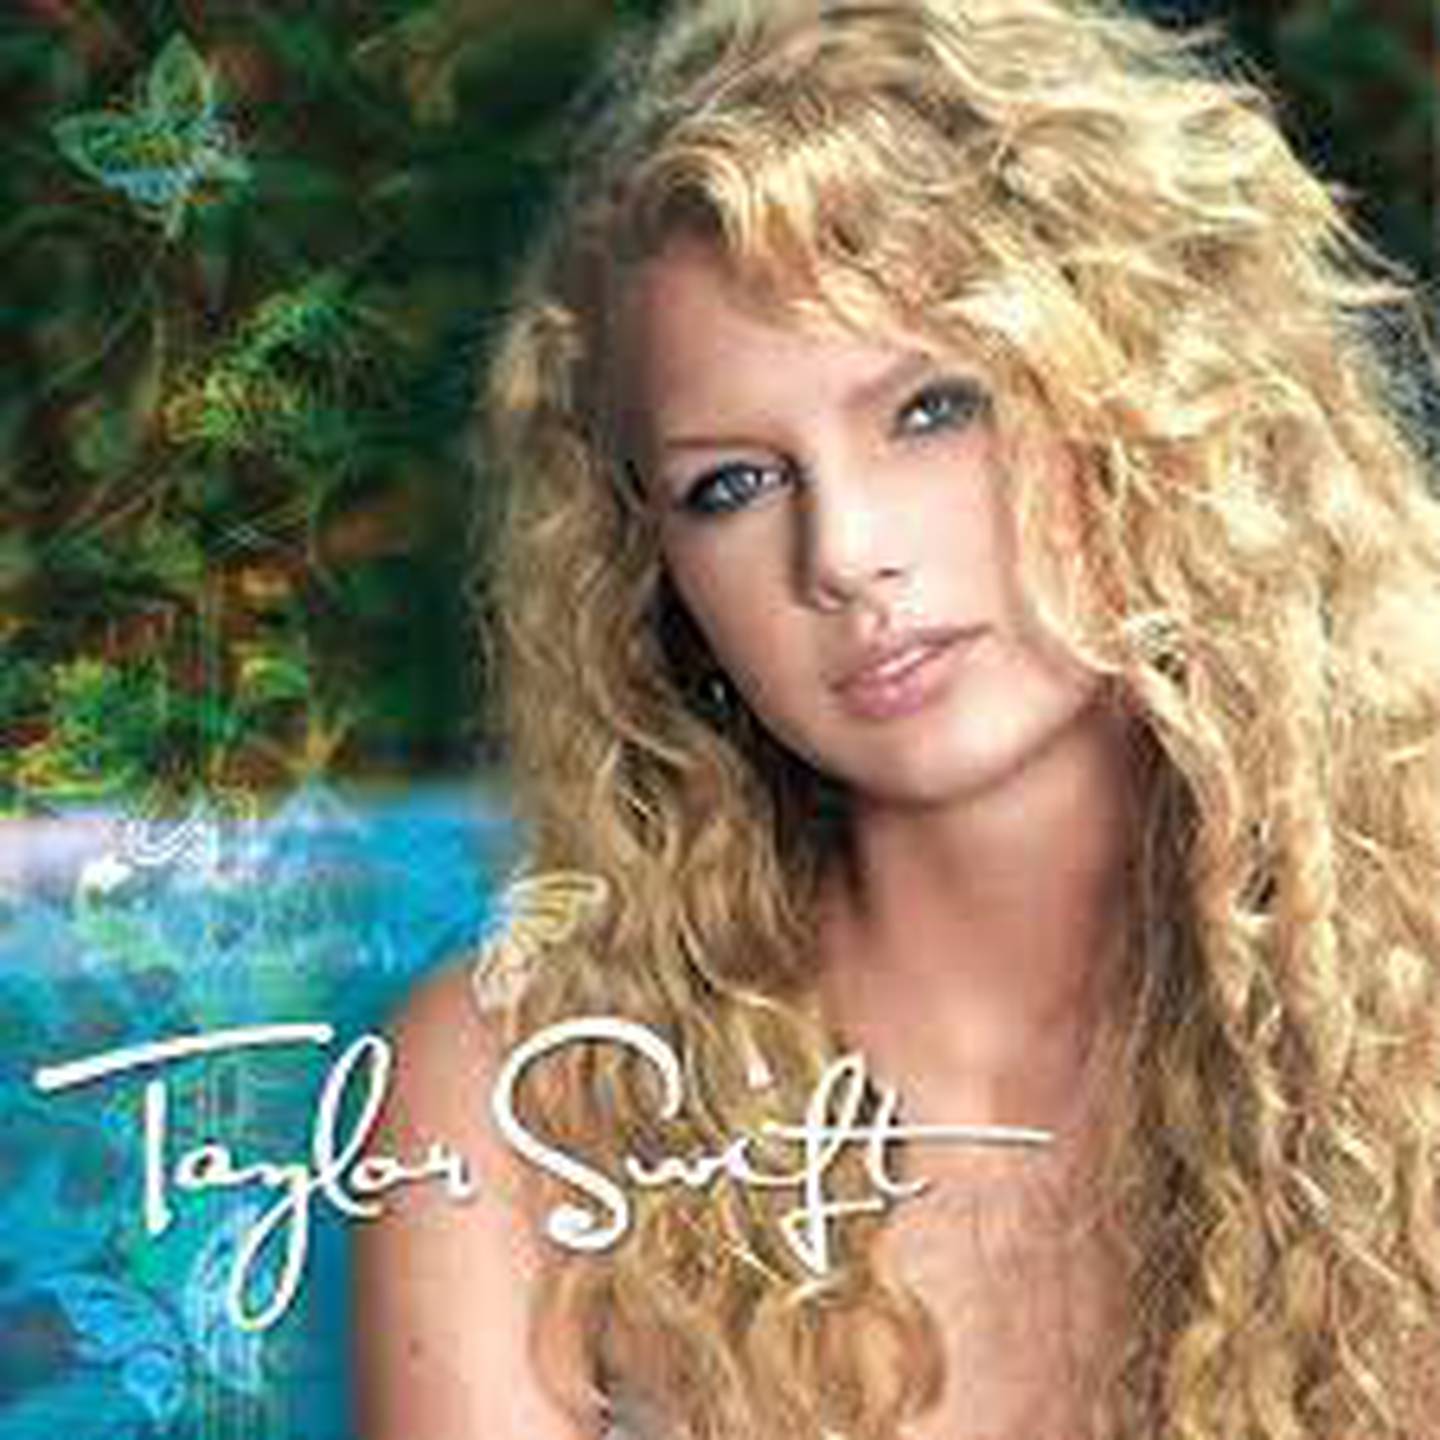 Carátula de su primer álbum "Taylor Swift".